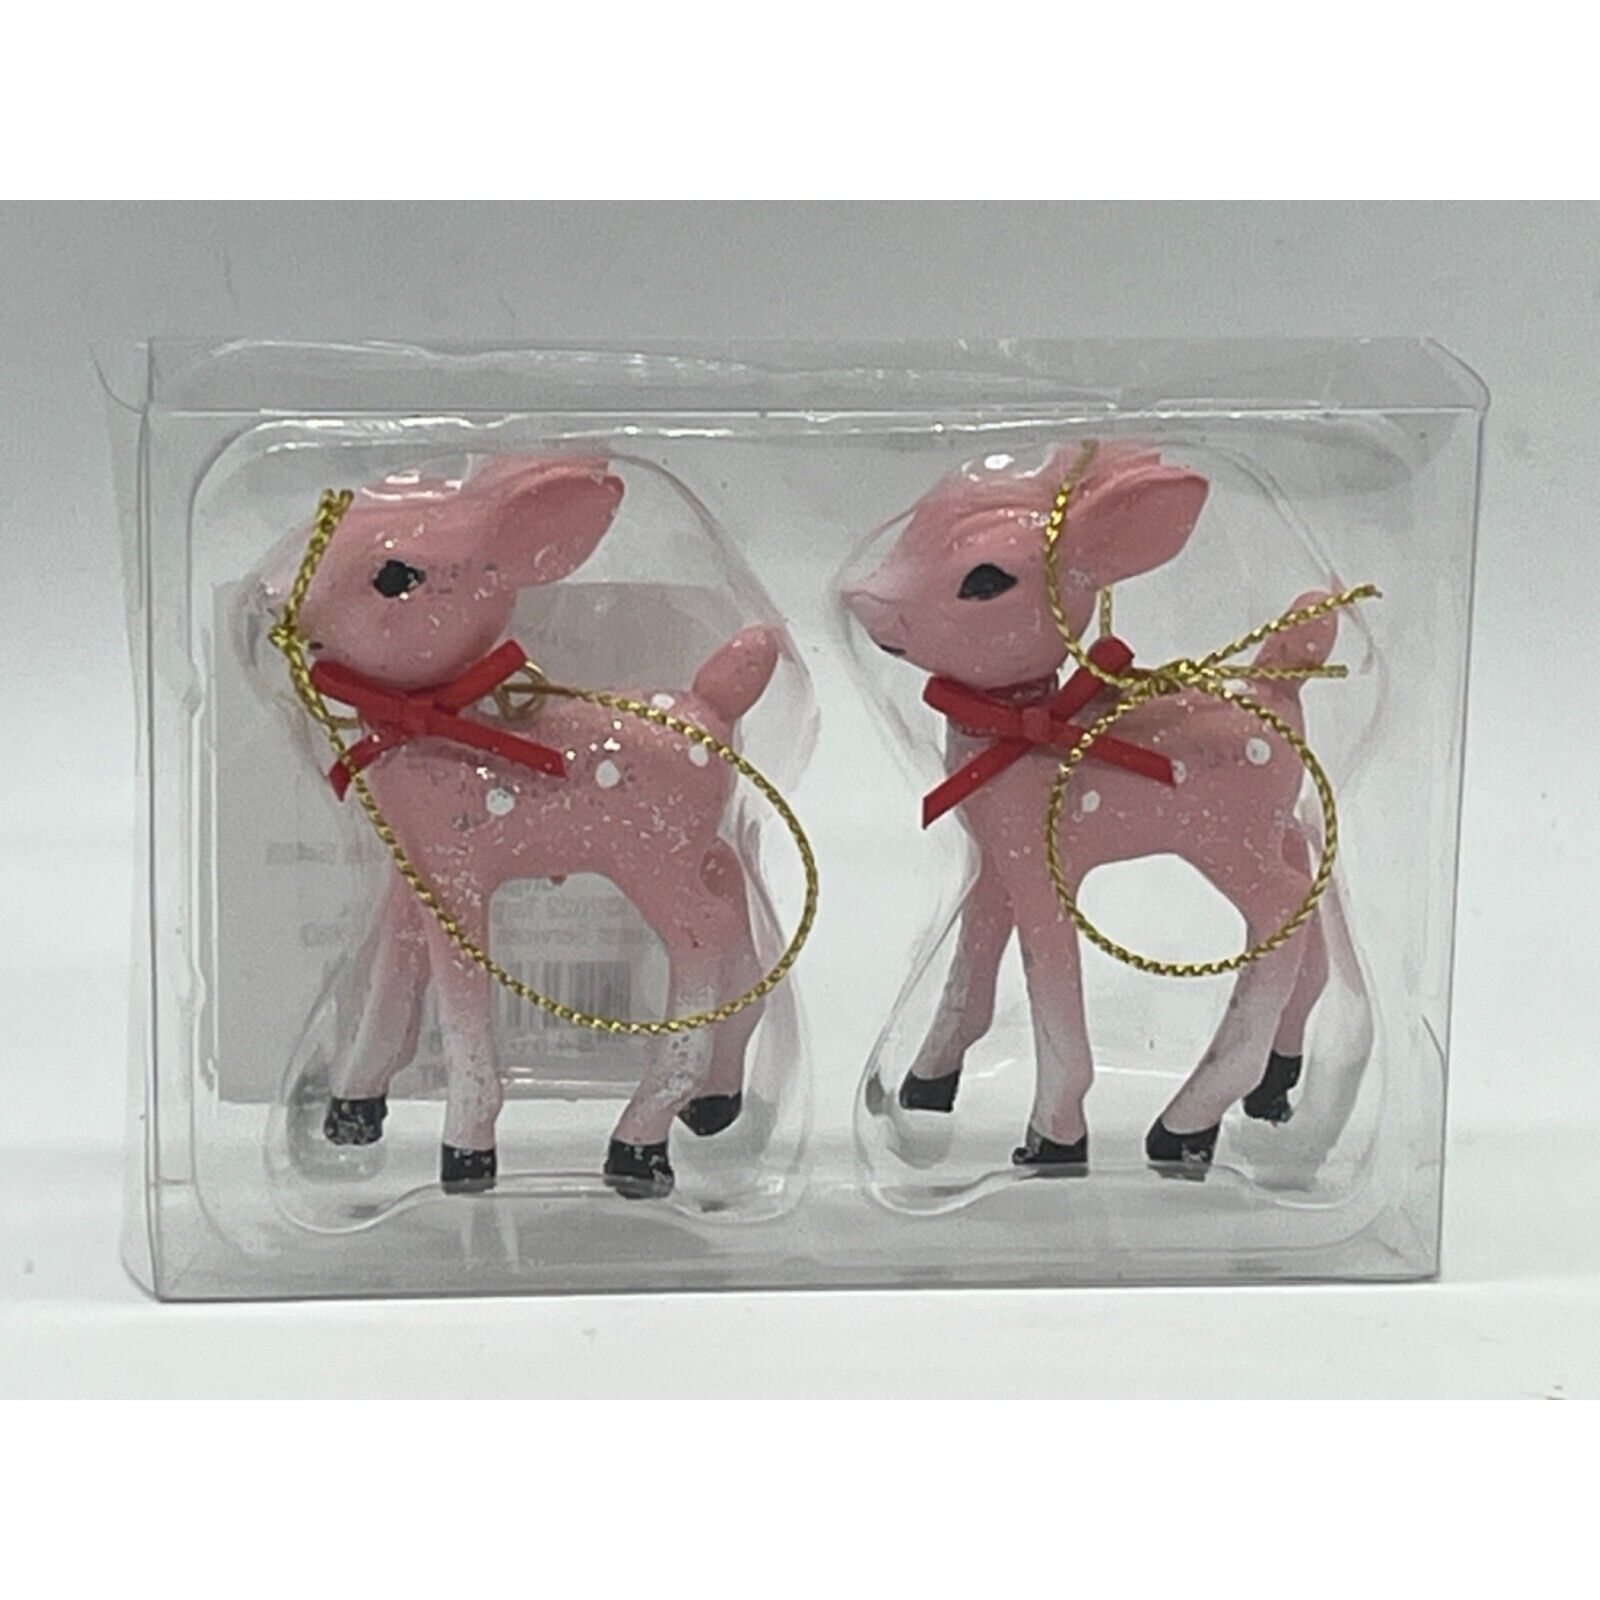 Target Wondershop Christmas 2022 Retro Style Pink Reindeer Ornament Set of 2